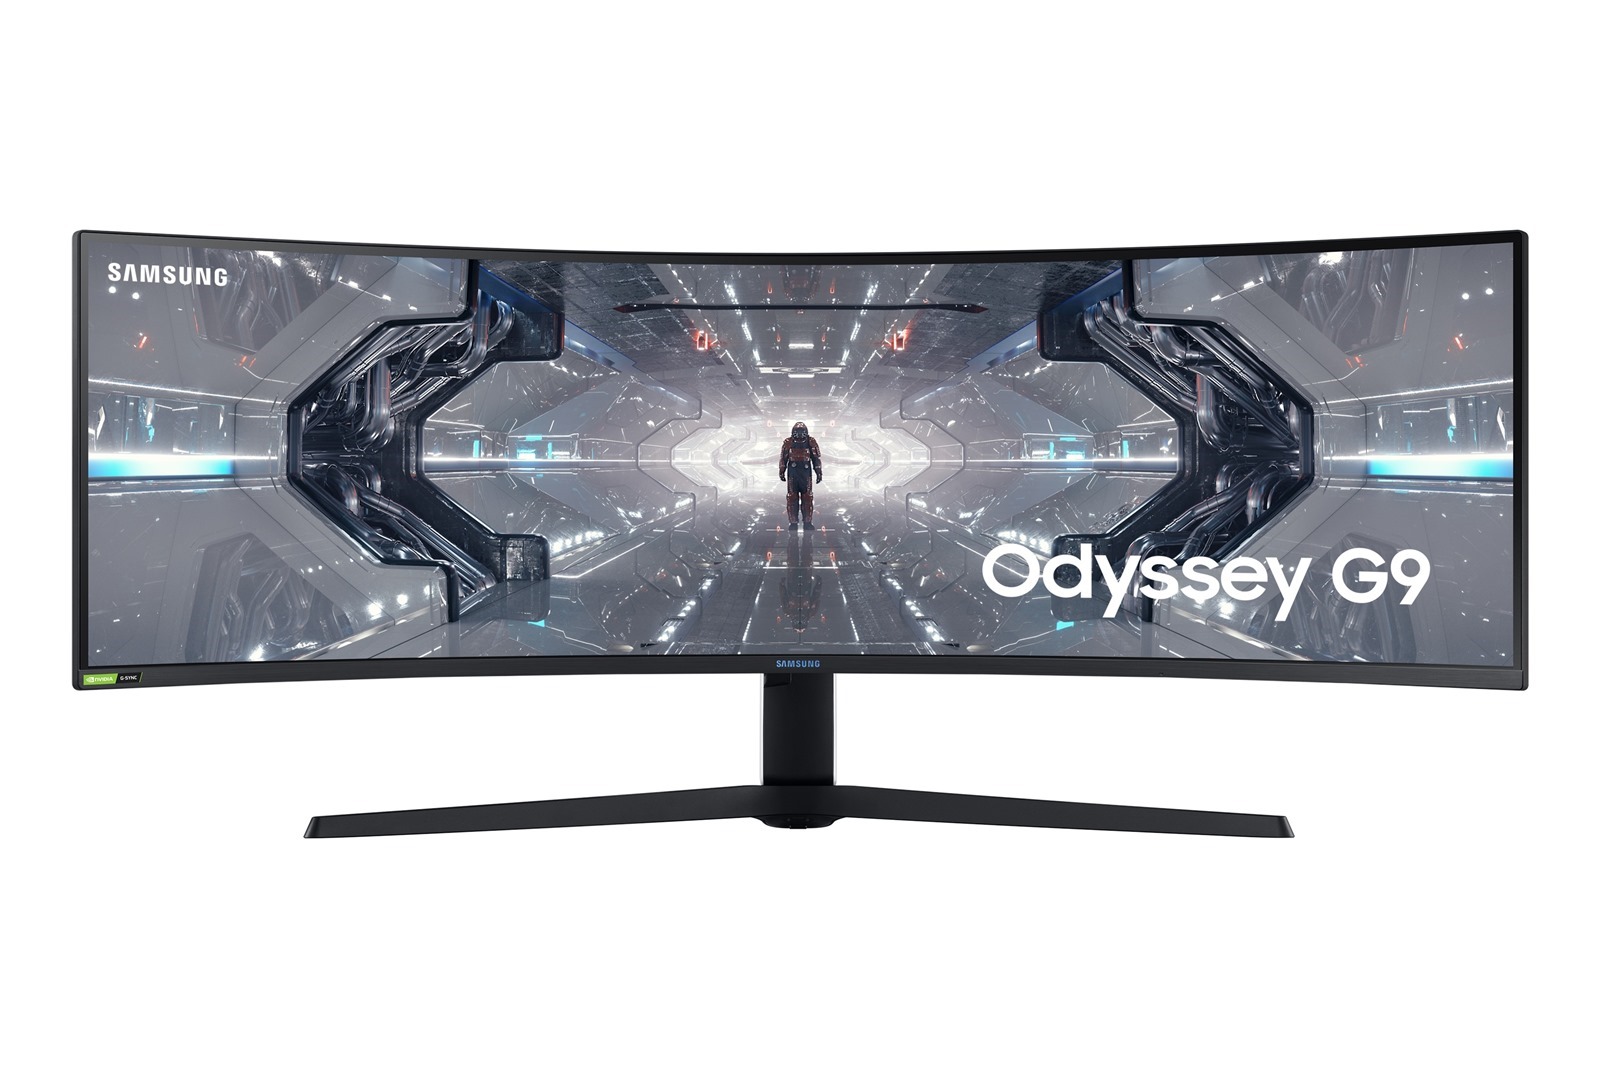 奧德賽 Odyssey 系列曲面電競螢幕氣勢登台全球首款雙 2K Odyssey G9、玩家首選 Odyssey G7 曲面電競螢幕領先業界獨創 1000R 曲率 強悍內在、科技外觀 暢享專業級遊戲快感 @3C 達人廖阿輝